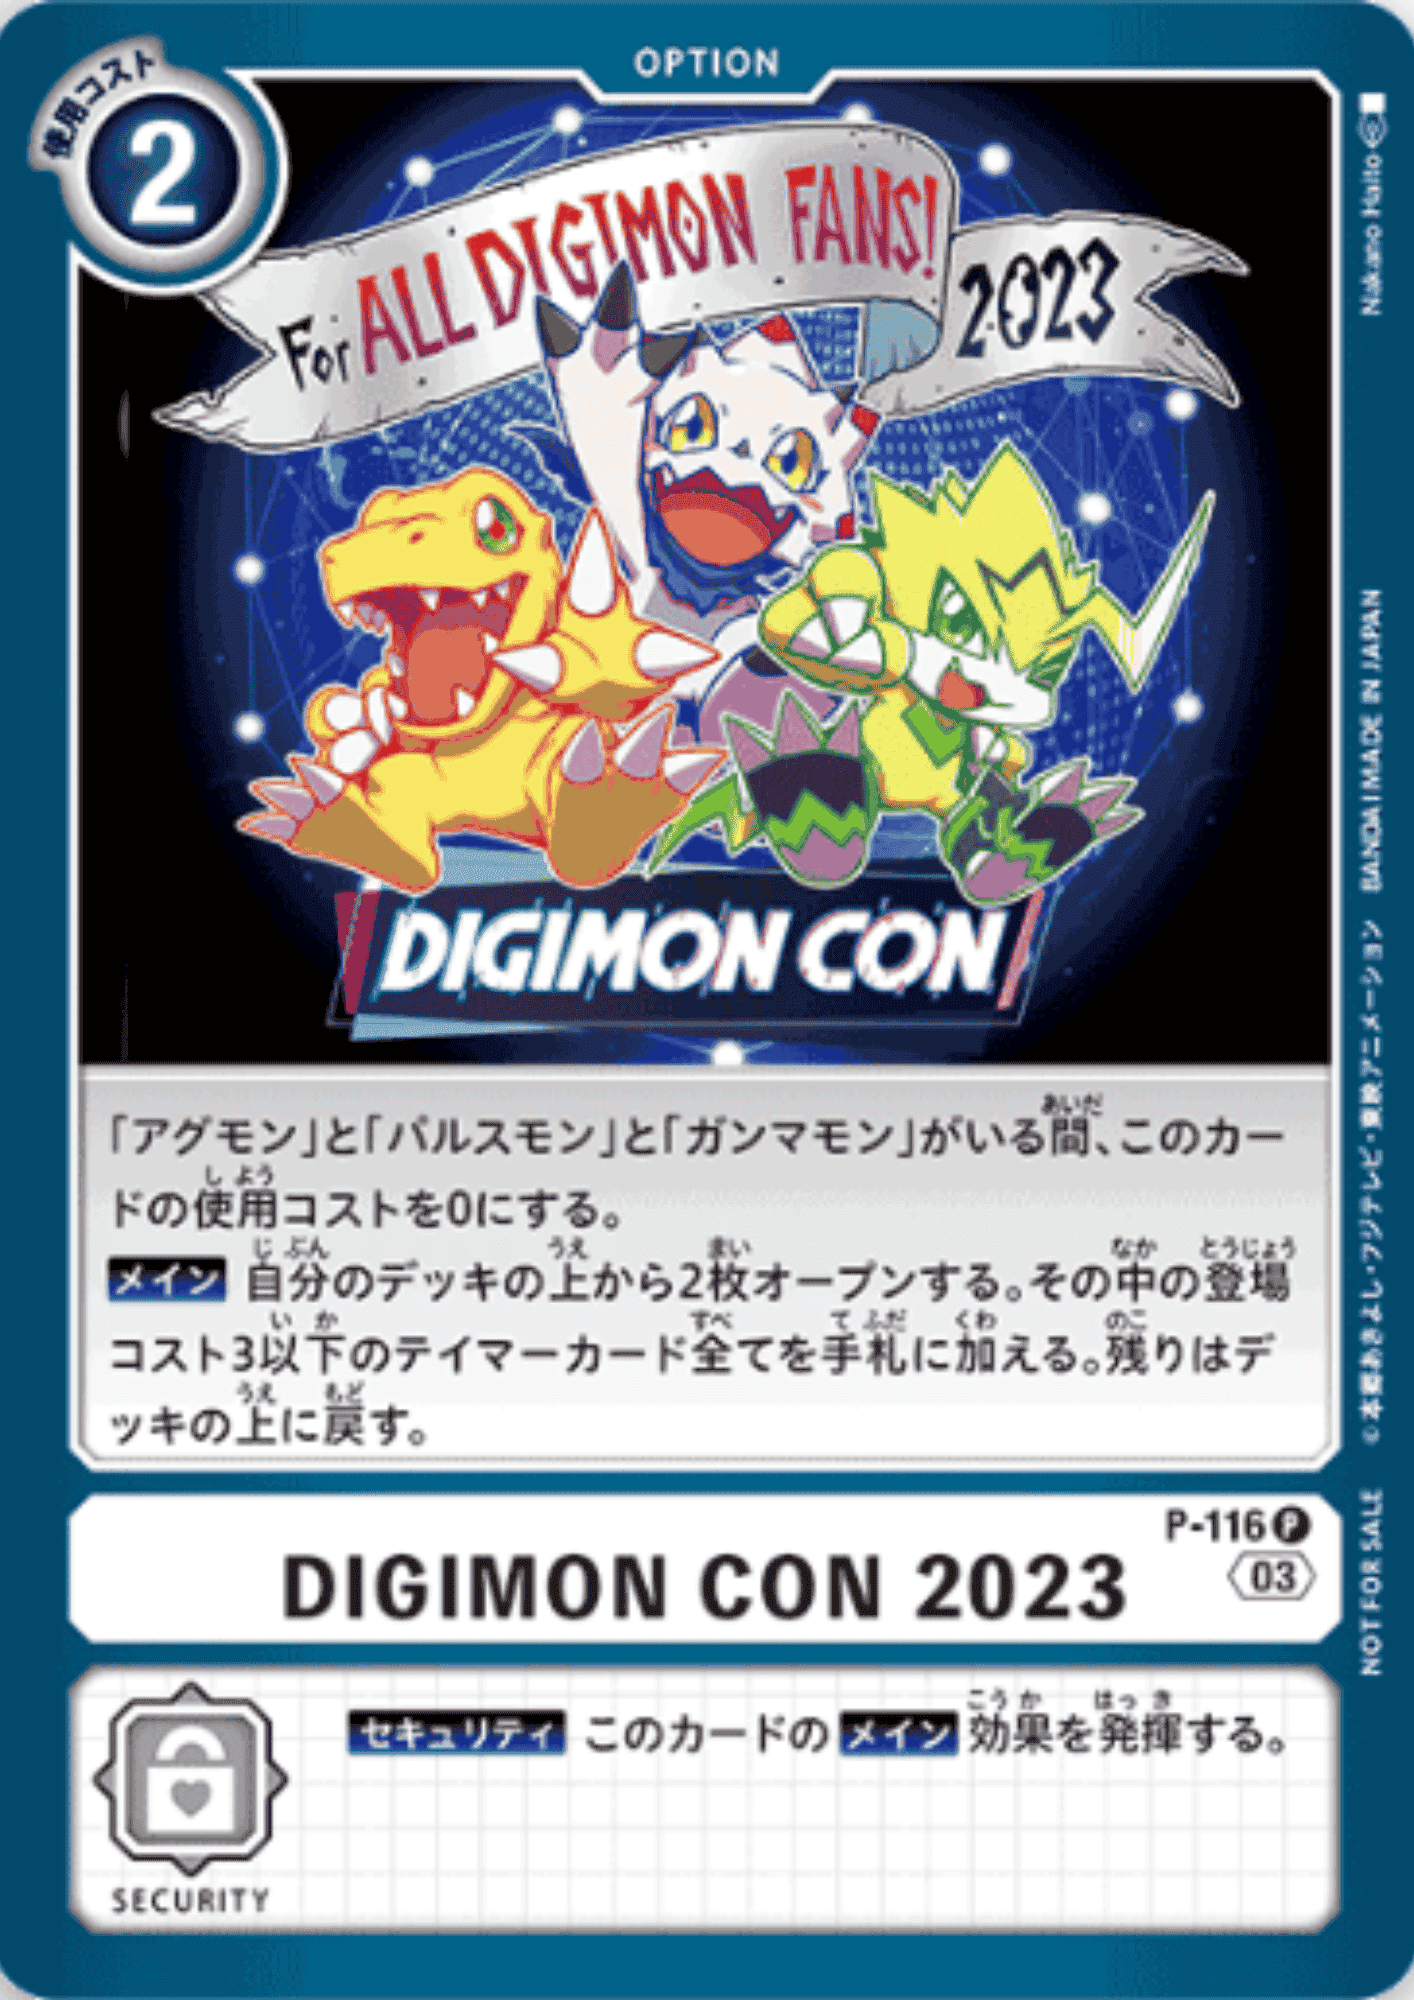 DIGIMON CON 2023 P-116 | DIGIMON CON Promotion Pack ChitoroShop